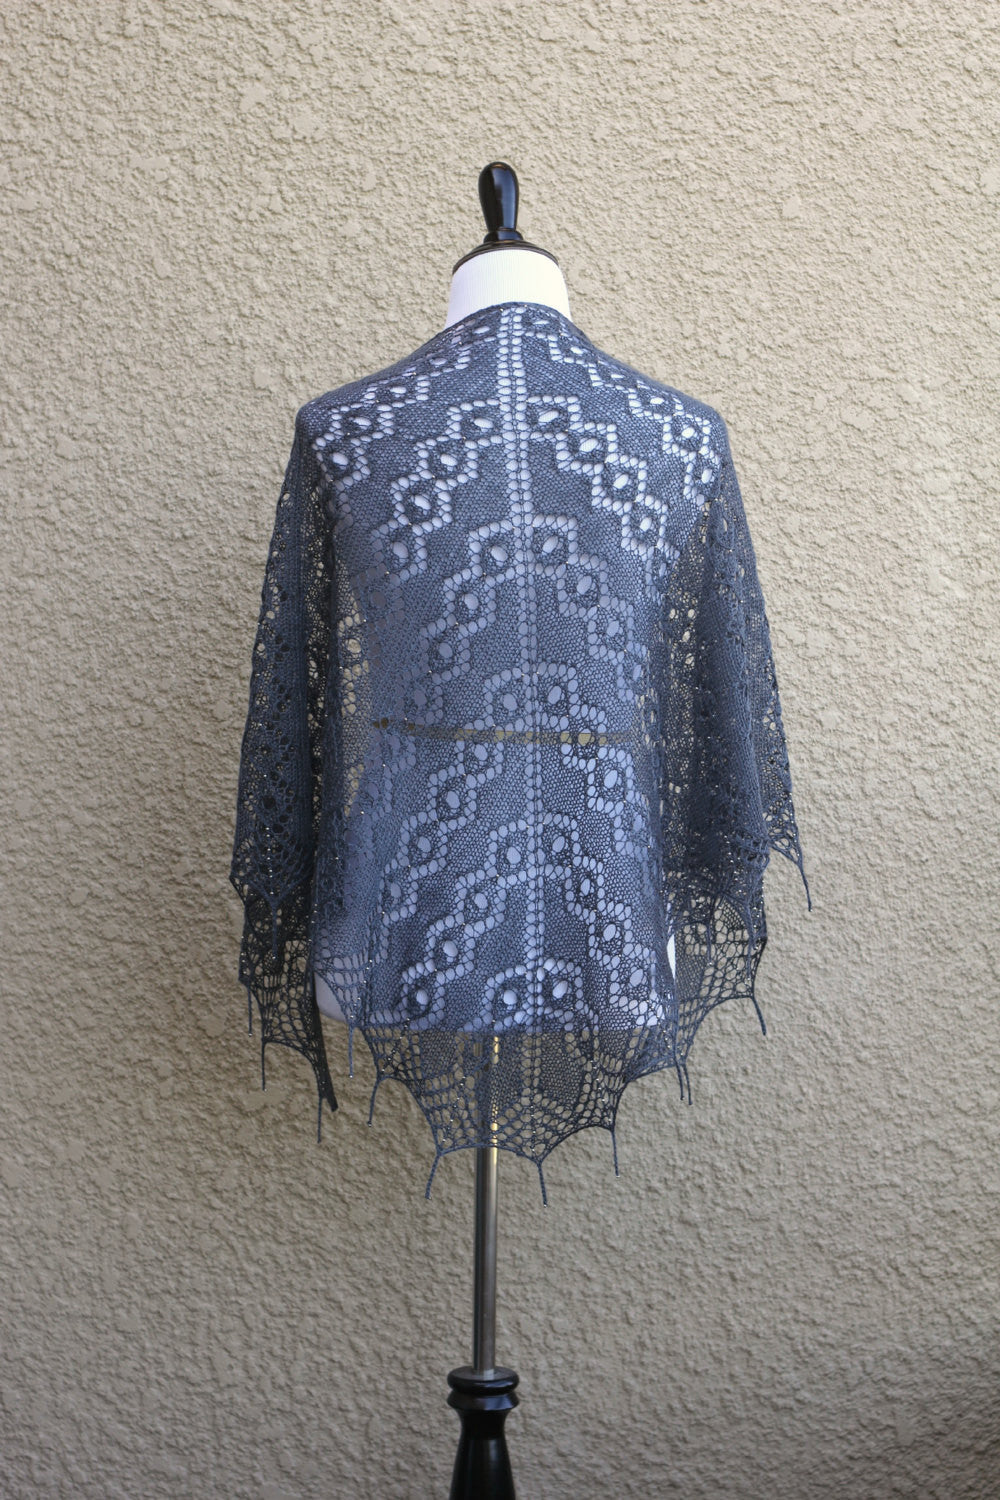 Dark knit shawl